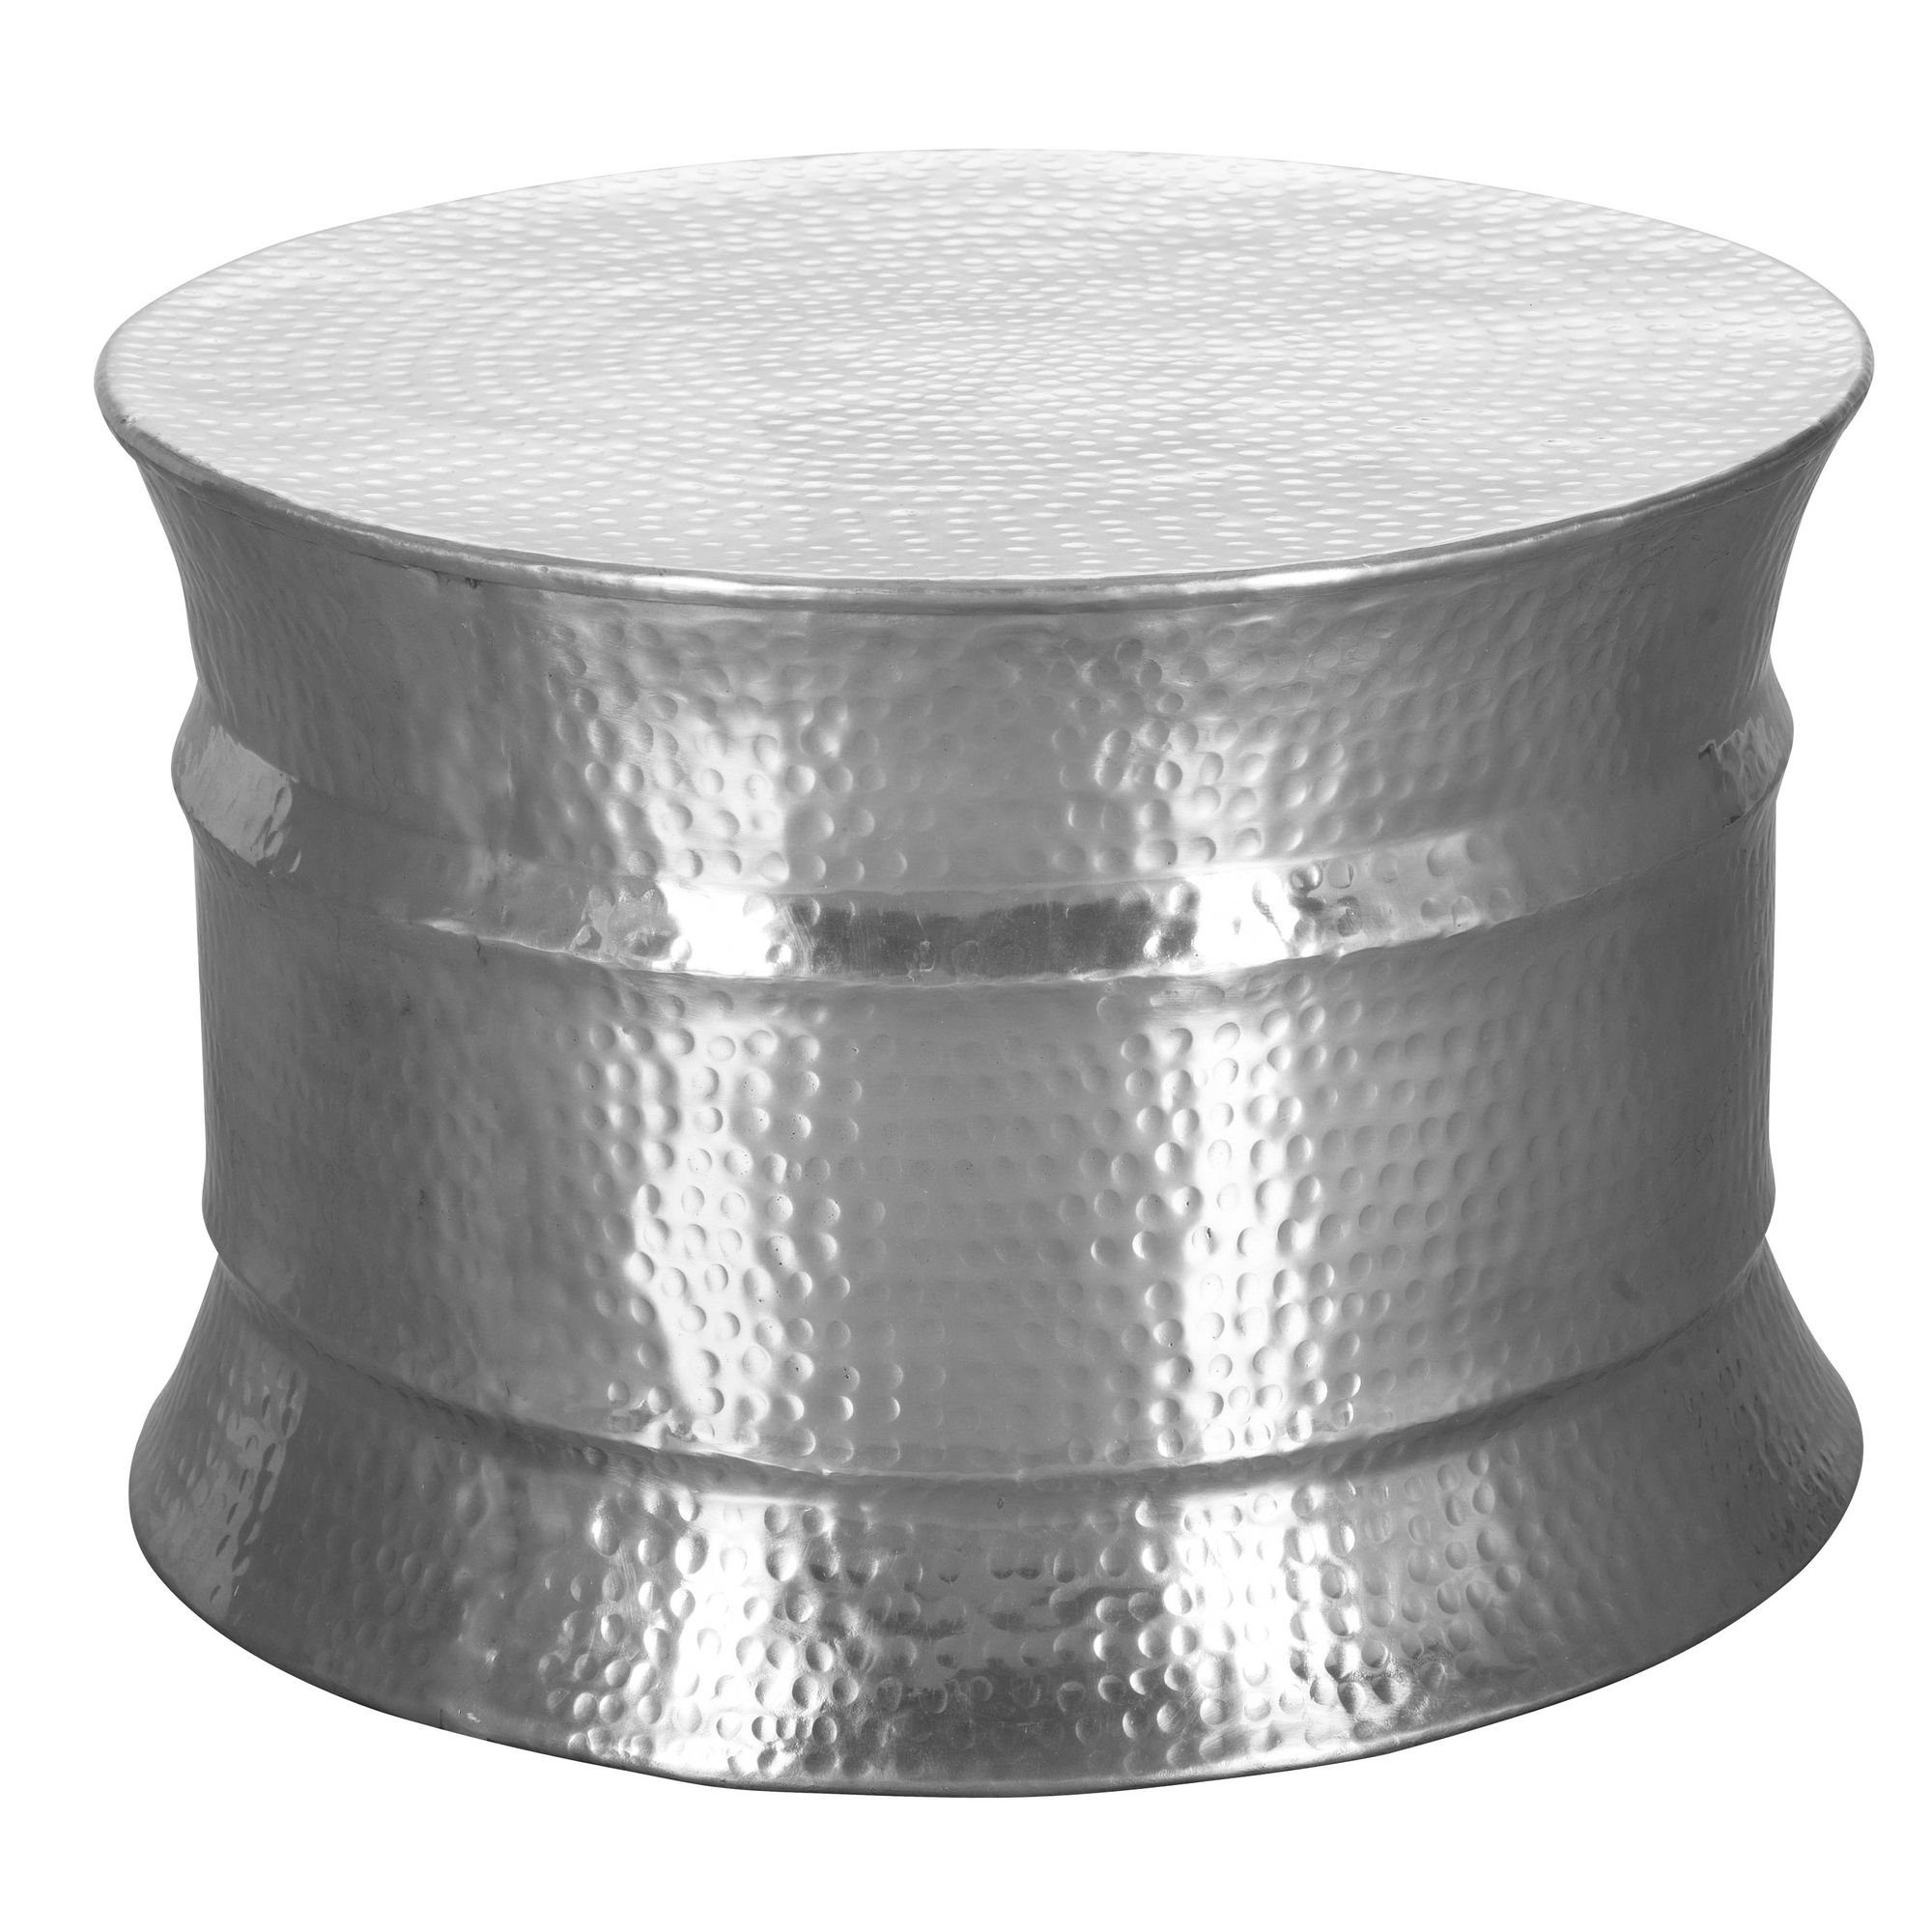 cm SuVa12237_1 FINEBUY (62x41x62 Silber Silber Hammerschlag | Kleiner Rund), Sofatisch Silber Wohnzimmertisch, Orientalisch Couchtisch Aluminium